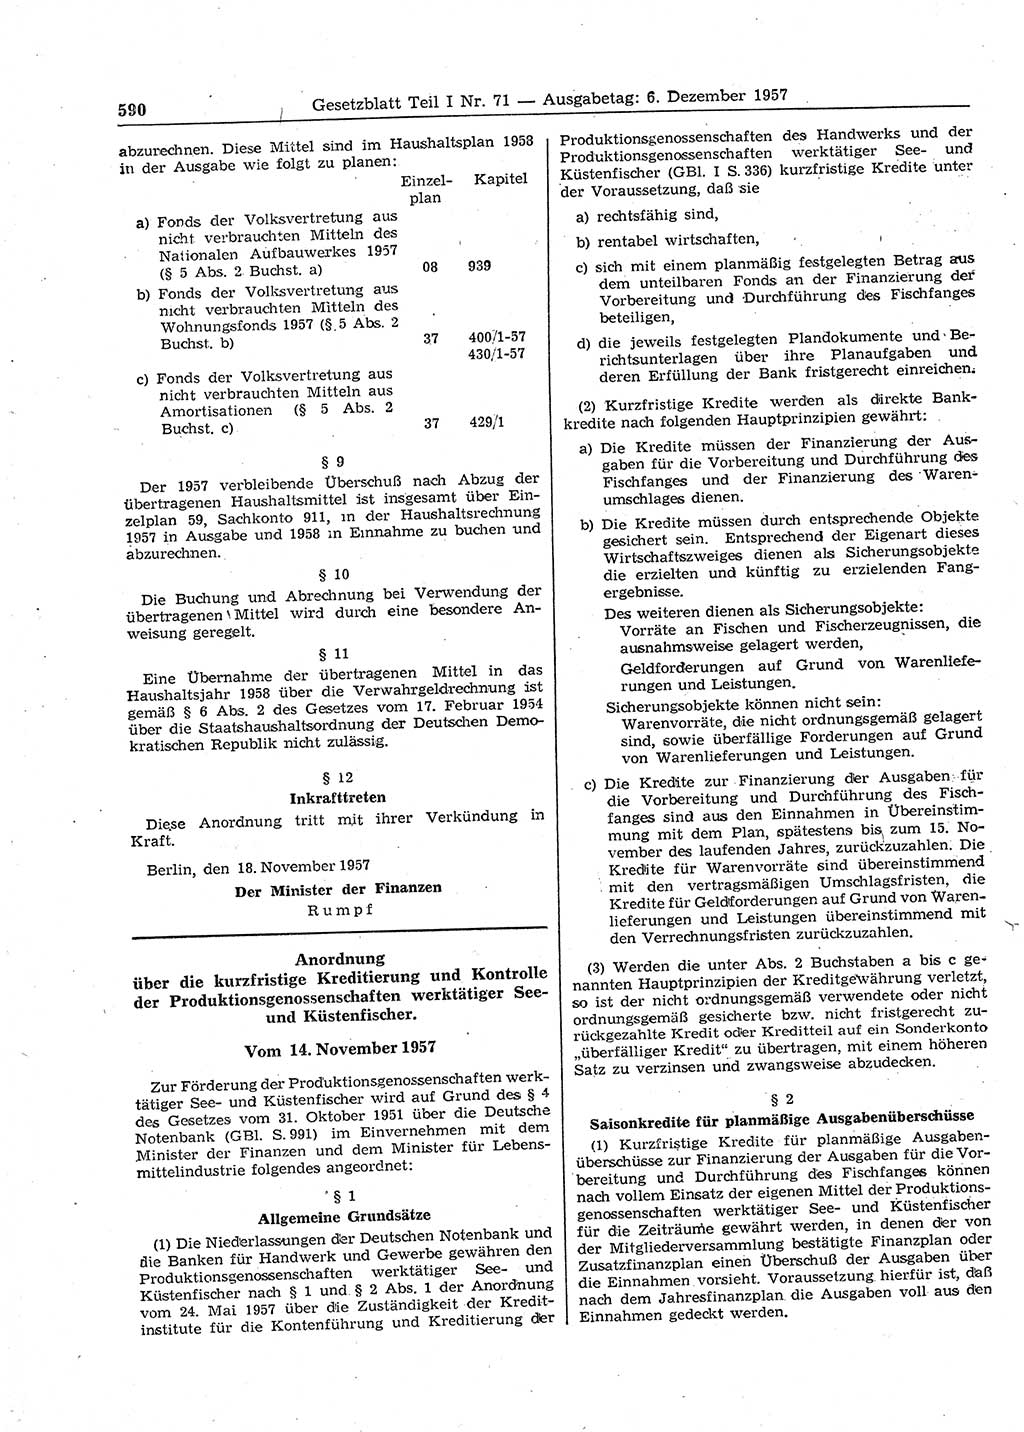 Gesetzblatt (GBl.) der Deutschen Demokratischen Republik (DDR) Teil Ⅰ 1957, Seite 590 (GBl. DDR Ⅰ 1957, S. 590)